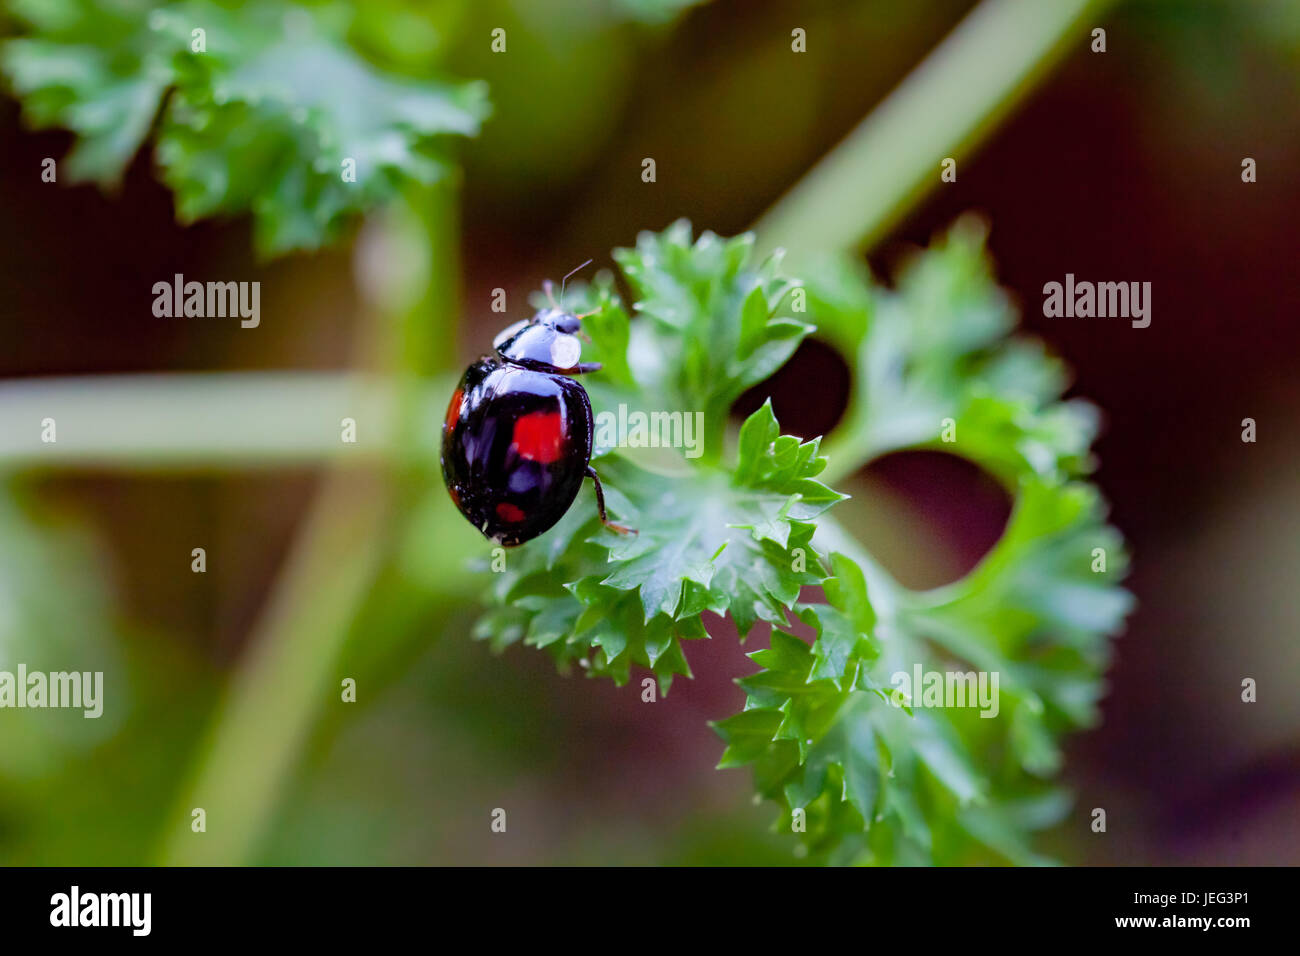 Black ladybug on basil herb Stock Photo